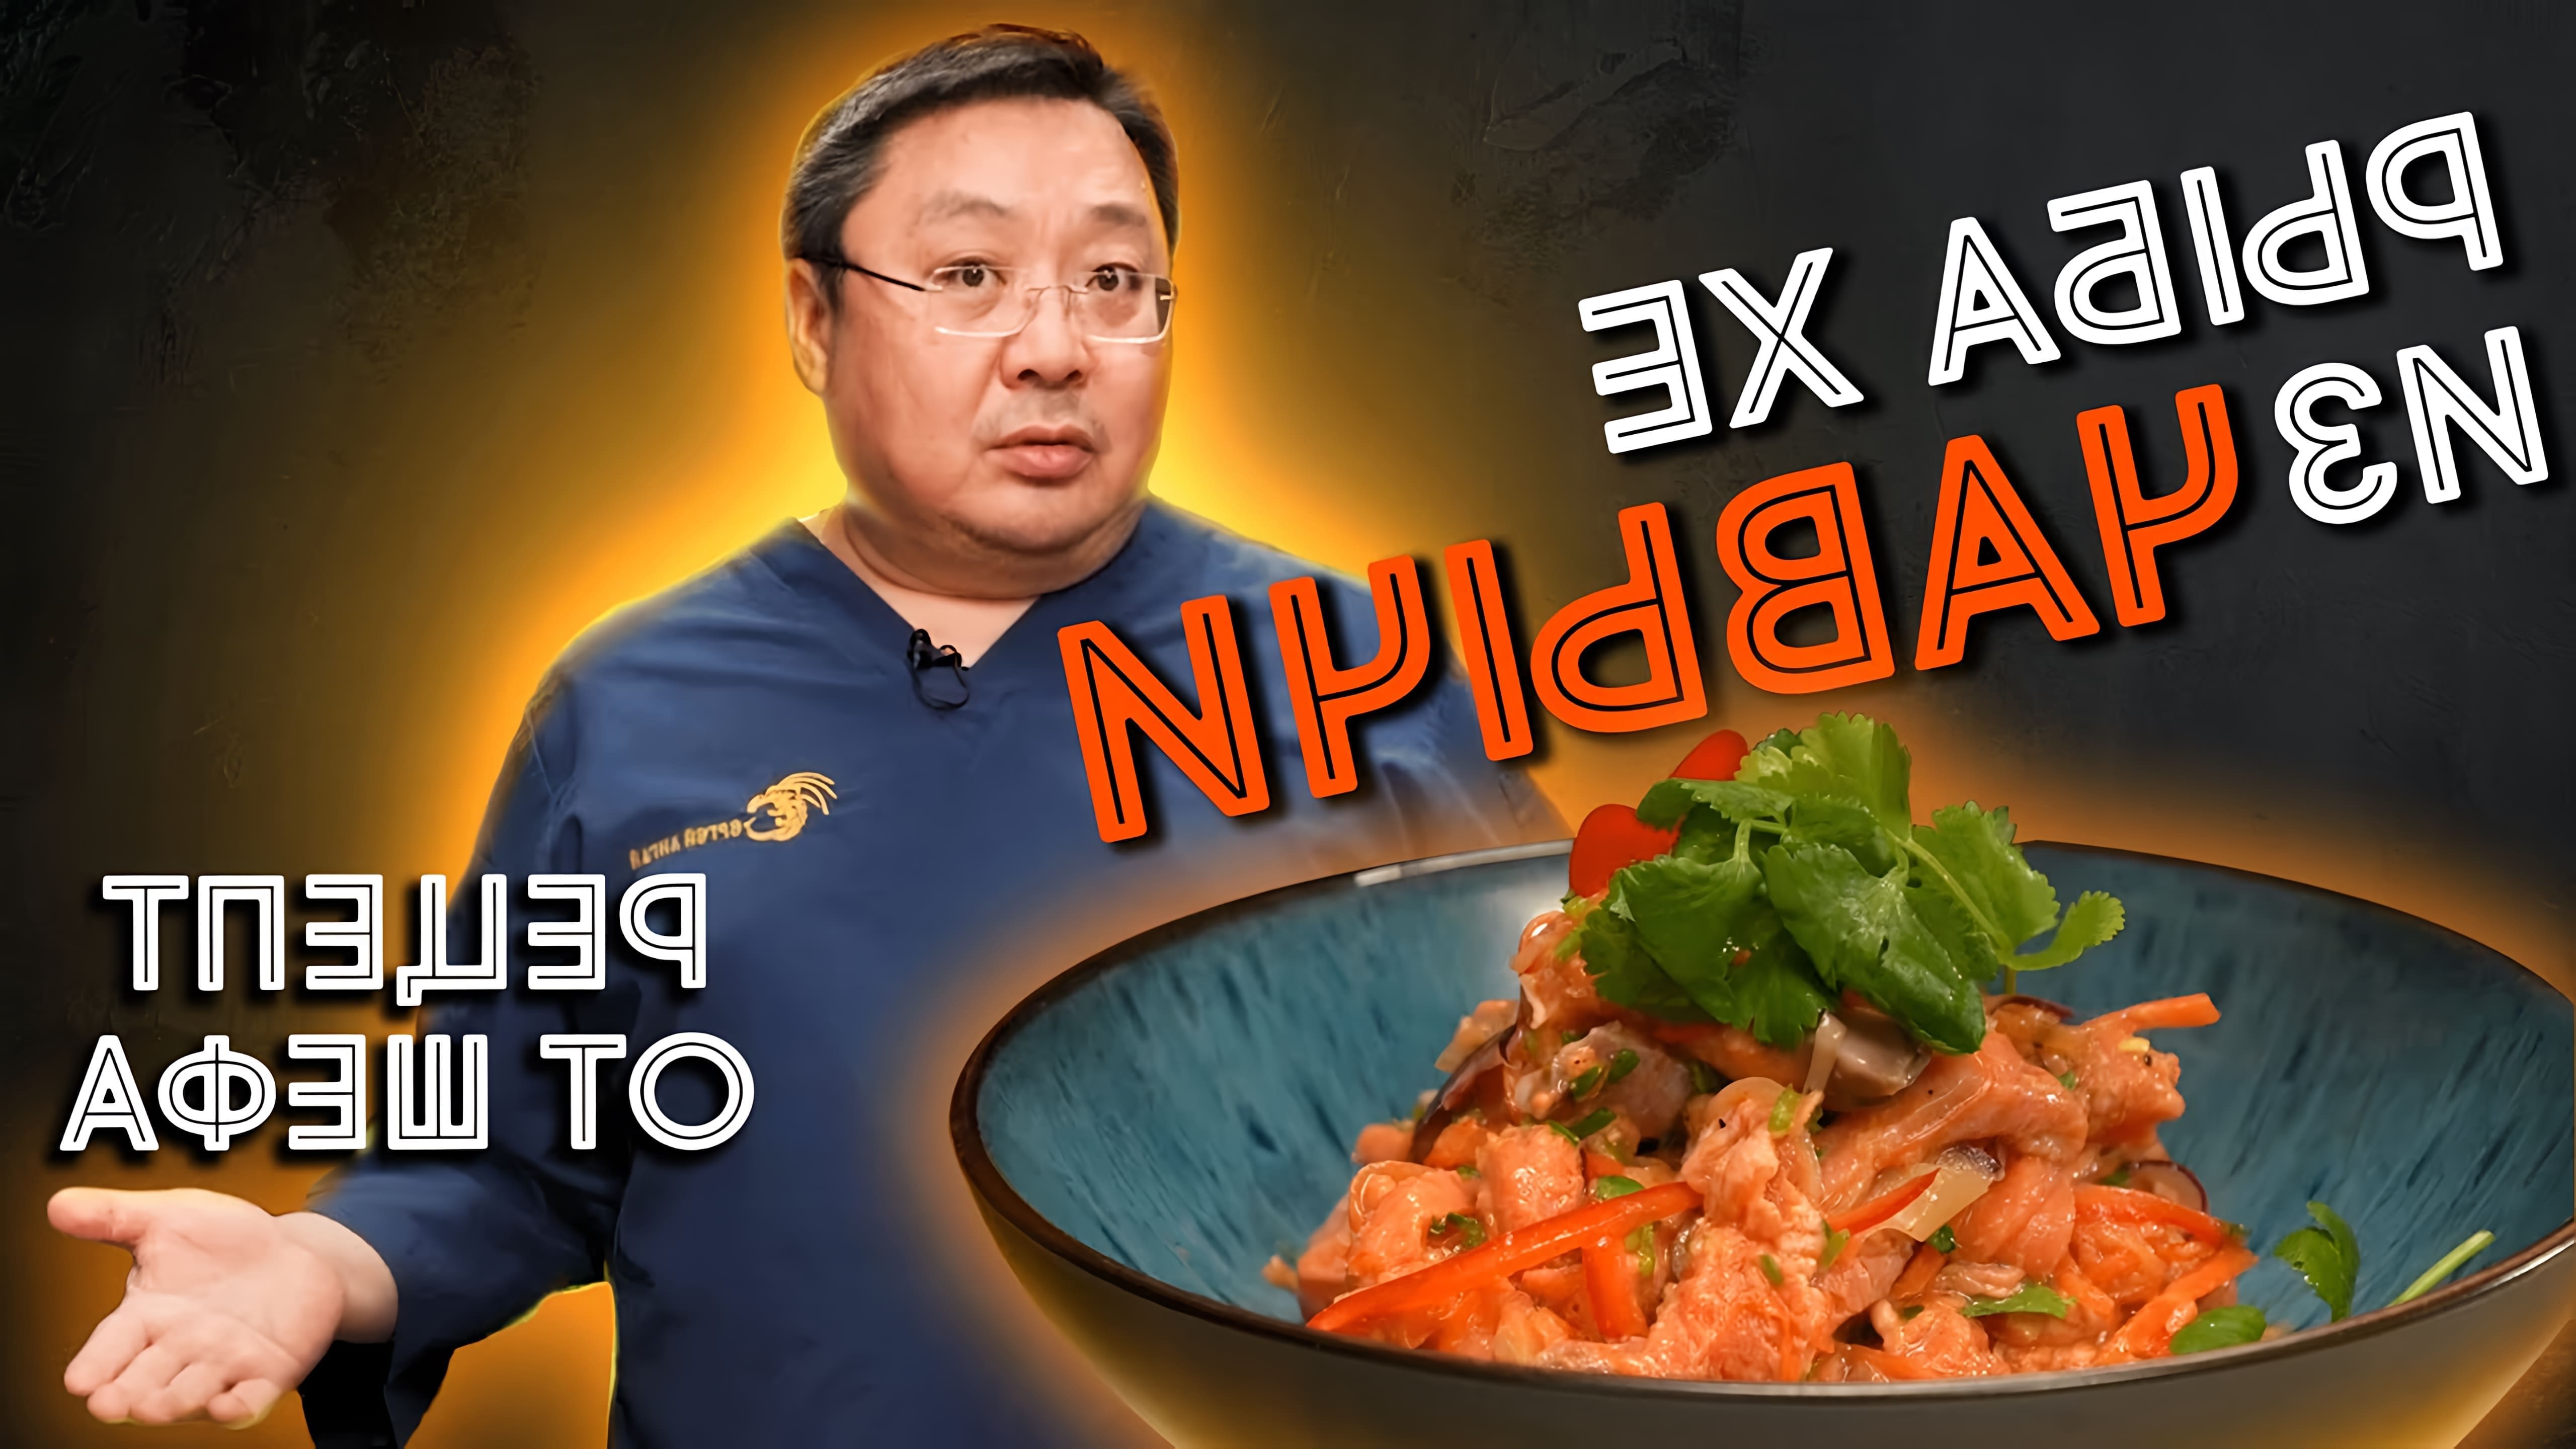 В этом видео шеф-повар Сергей Лигай показывает, как приготовить рыбу хе из чавычи - острую закуску из корейской кухни